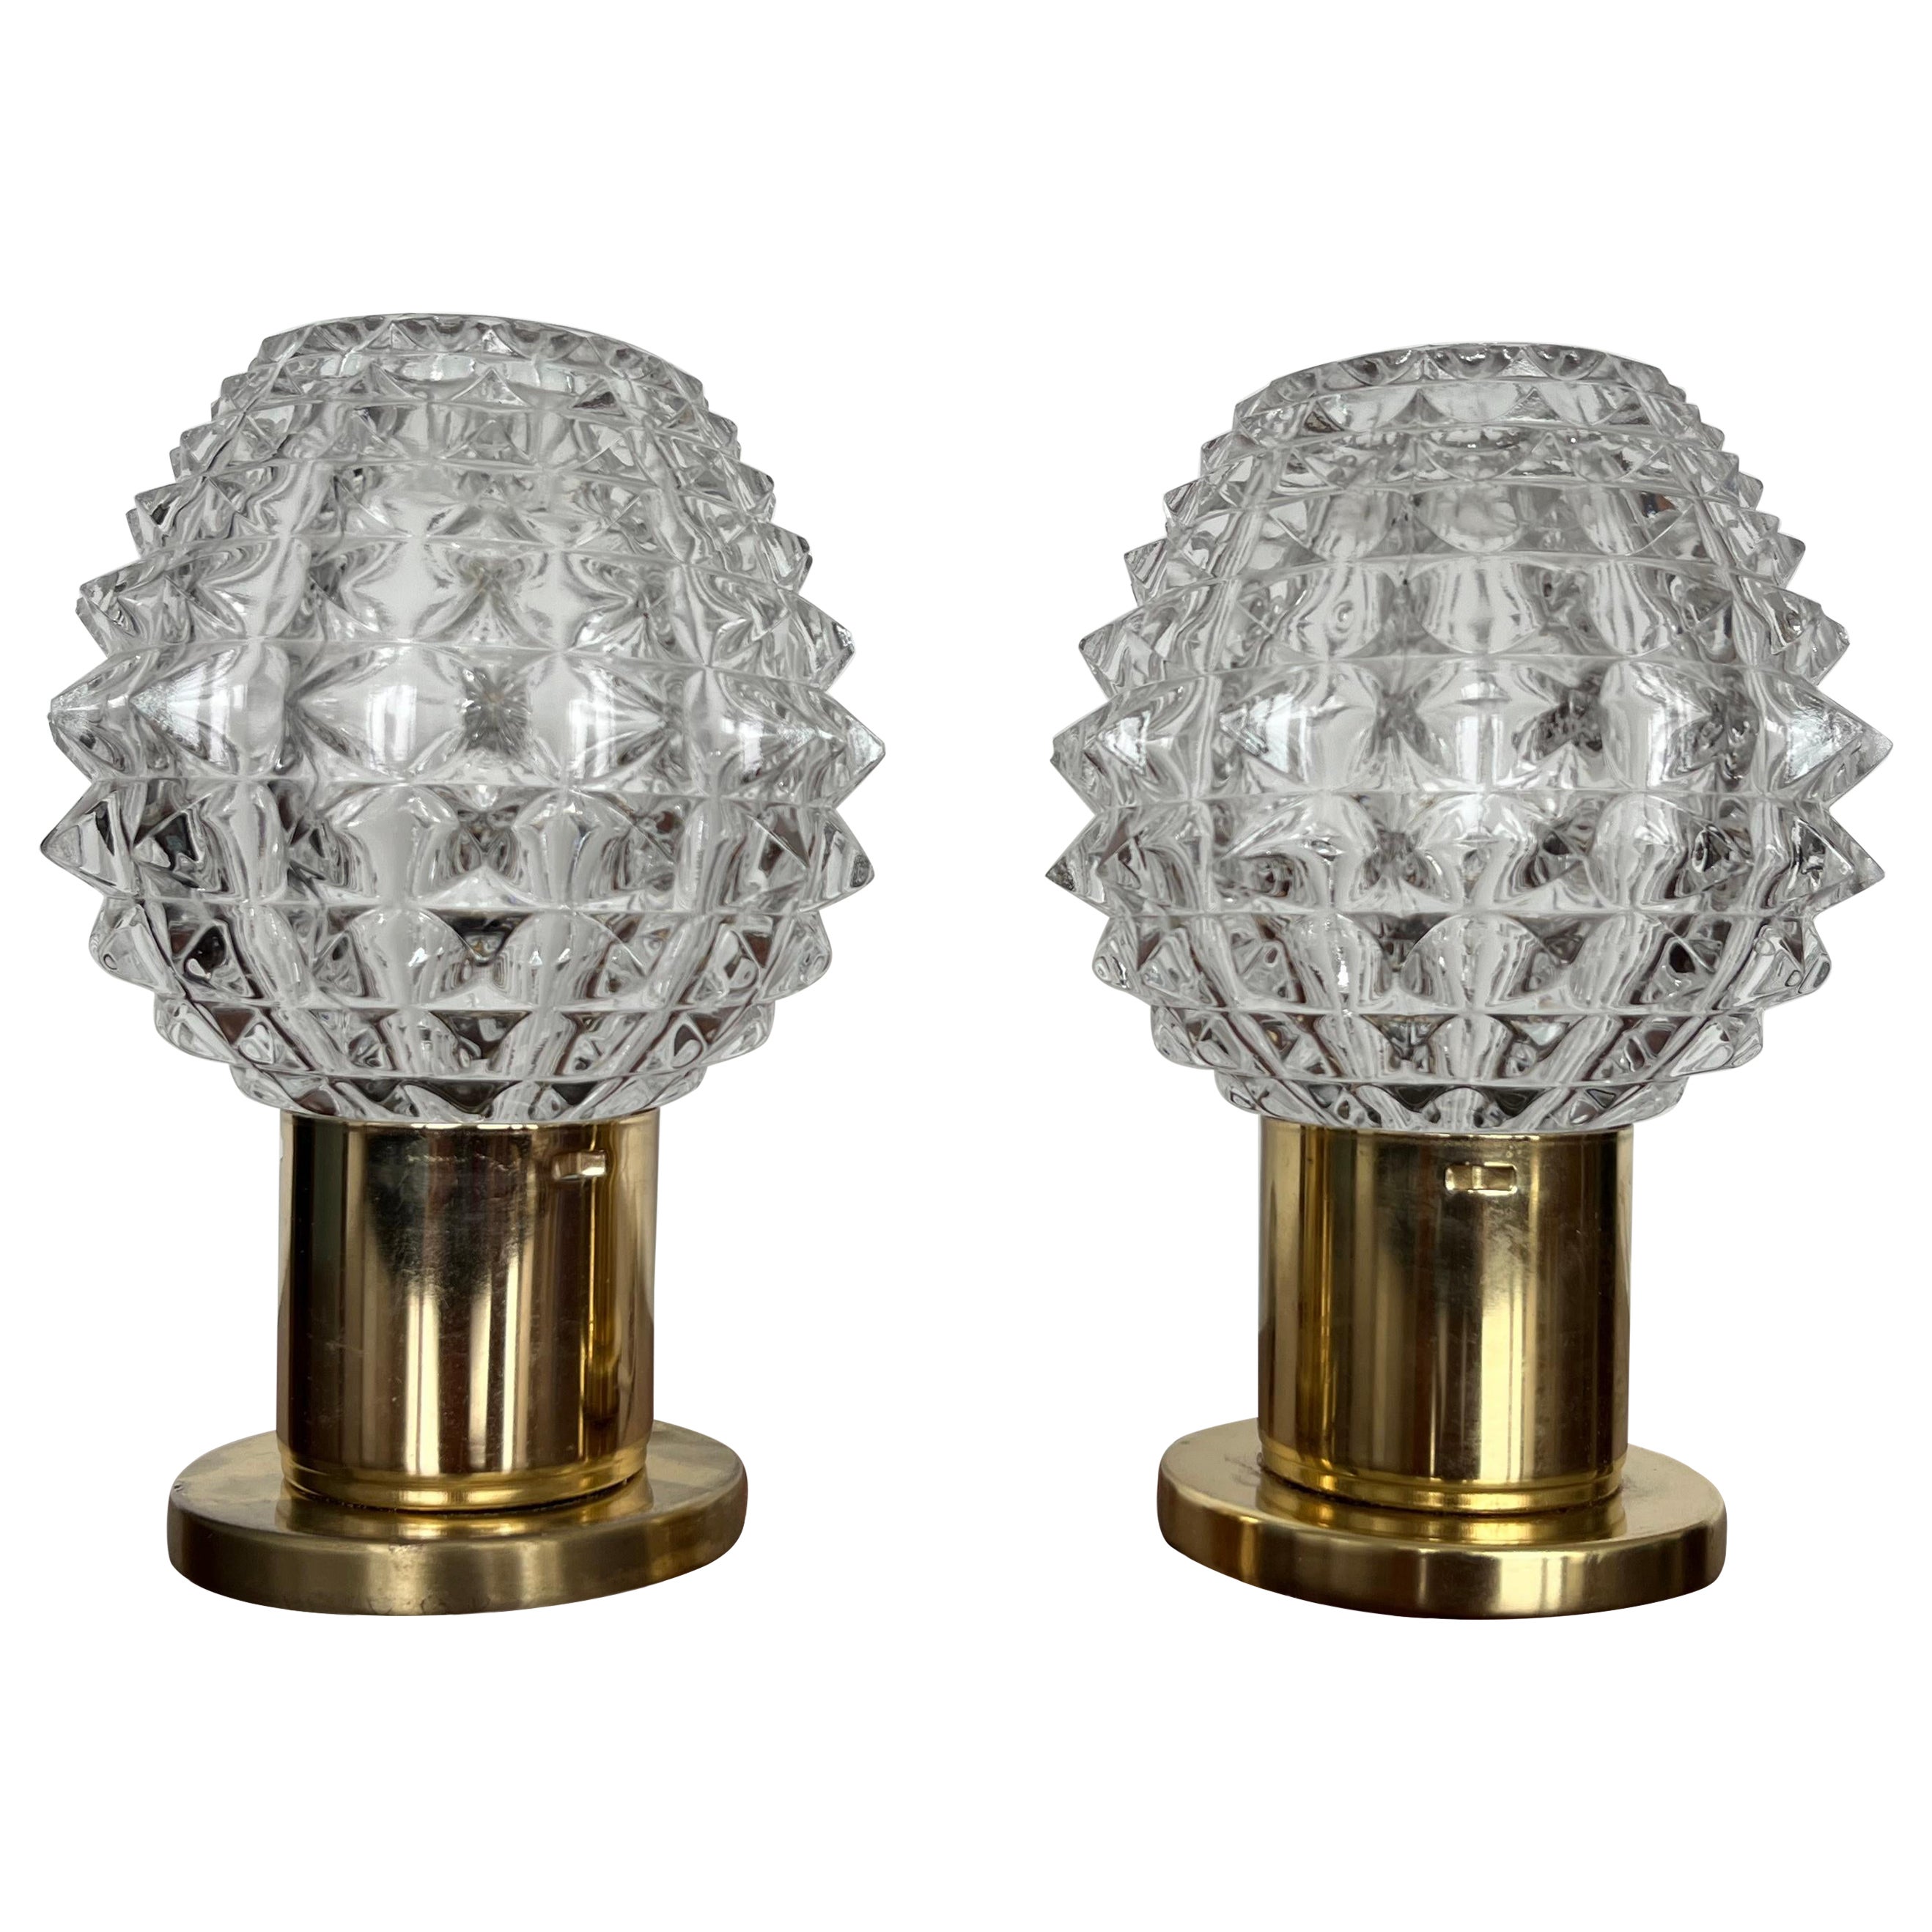 Paar Messing-Tischlampen oder -Lampen von Kamenický Šenov, 1960er Jahre /Tschechoslowakei